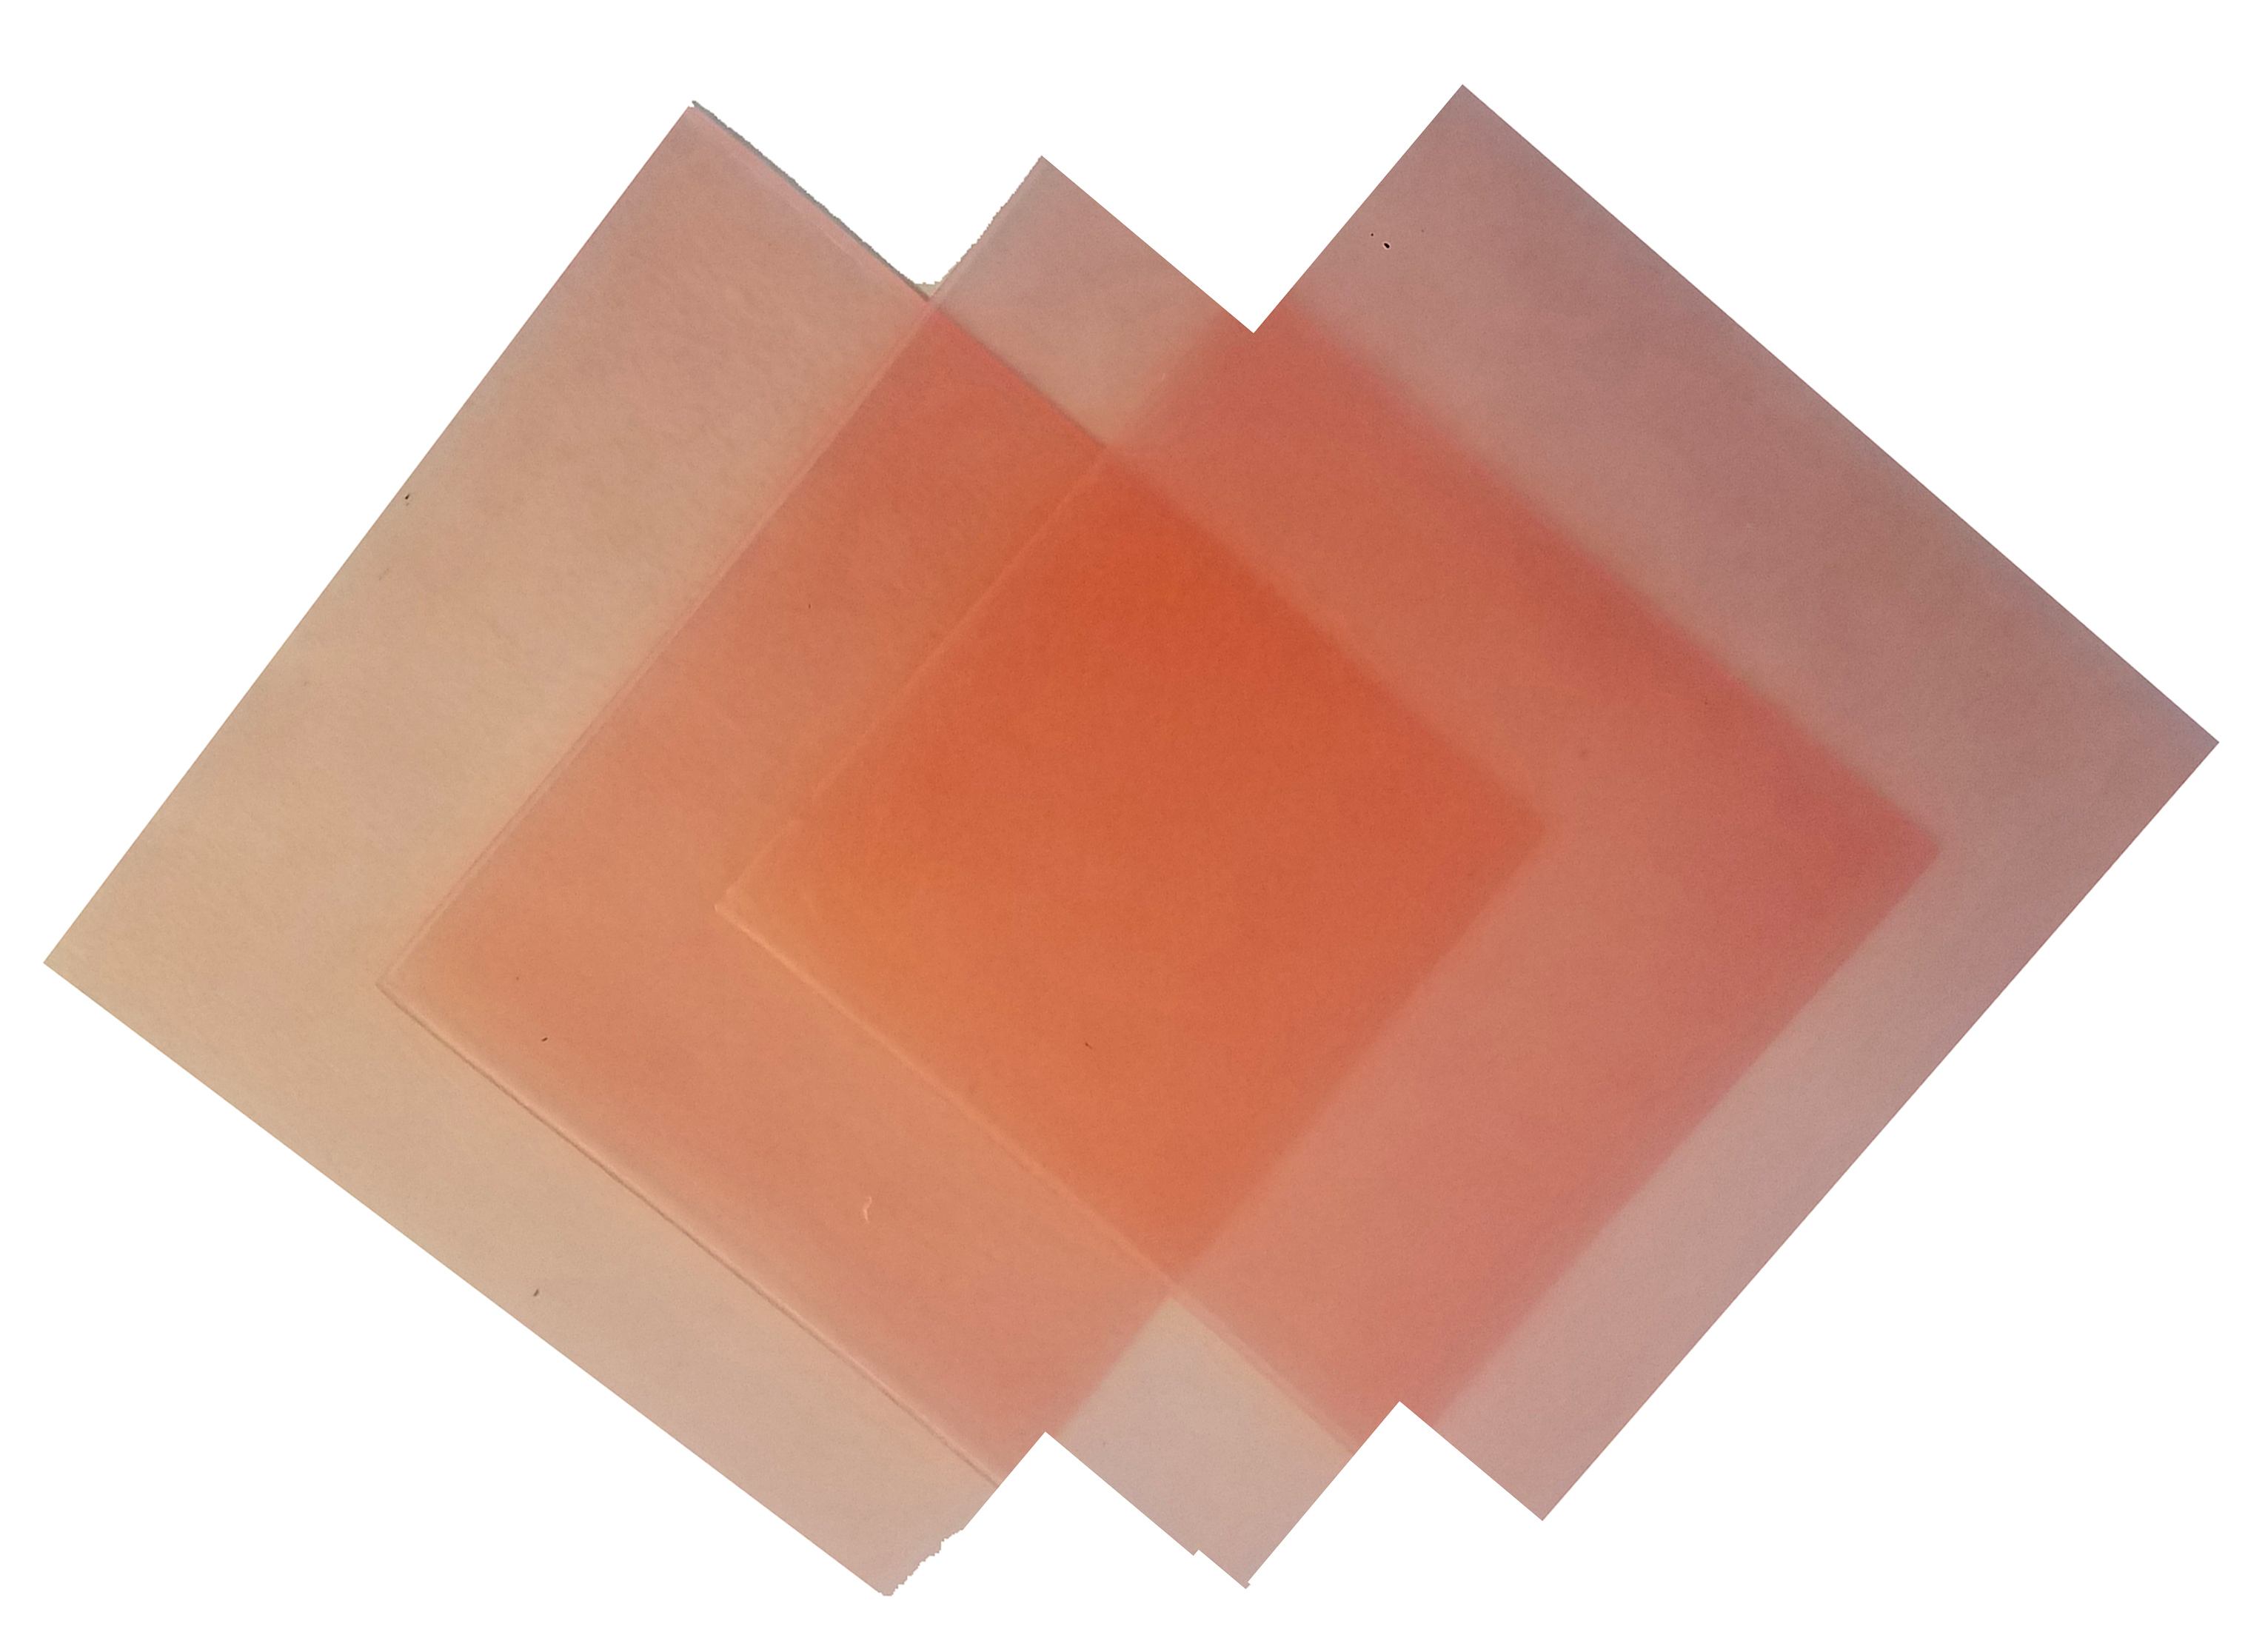 4\"x4\" sheet wax 24 gauge pink